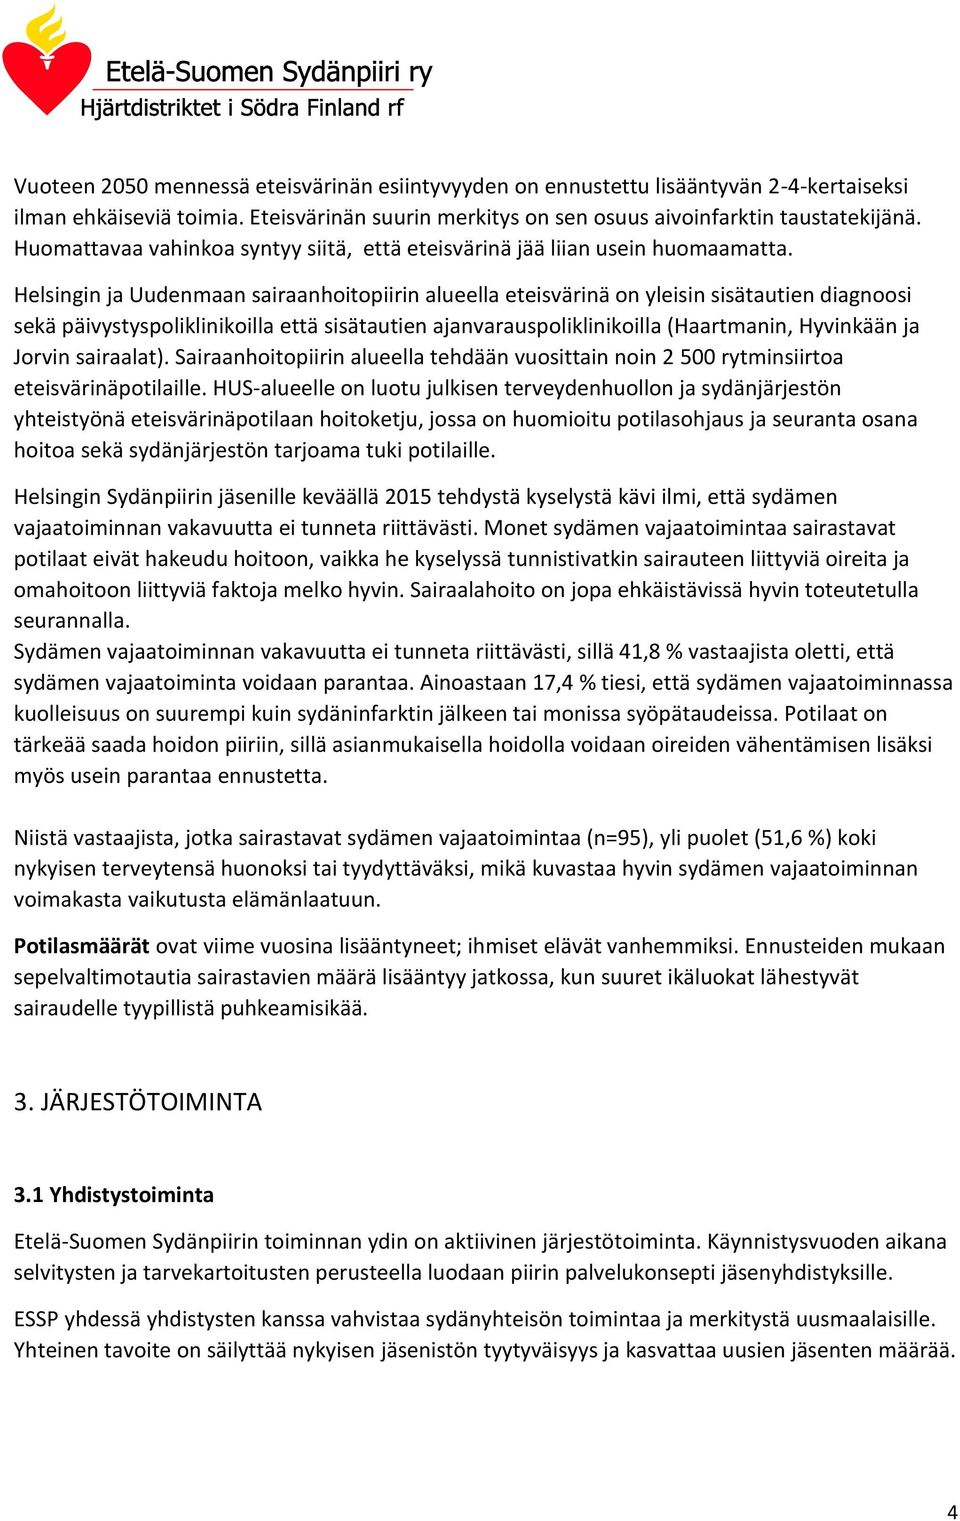 Helsingin ja Uudenmaan sairaanhoitopiirin alueella eteisvärinä on yleisin sisätautien diagnoosi sekä päivystyspoliklinikoilla että sisätautien ajanvarauspoliklinikoilla (Haartmanin, Hyvinkään ja